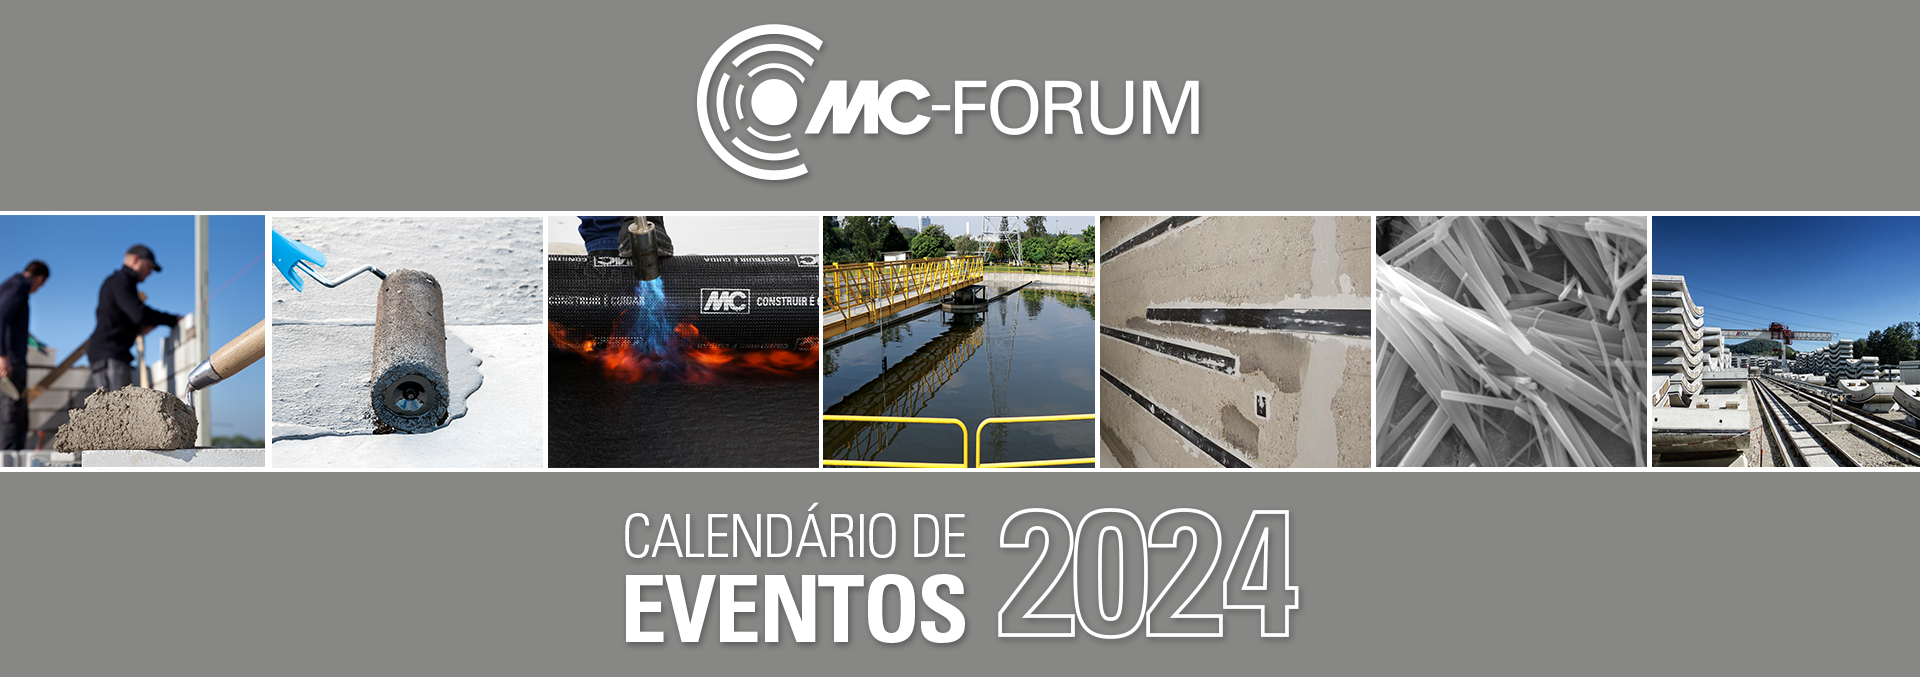 Calendário MC-Forum